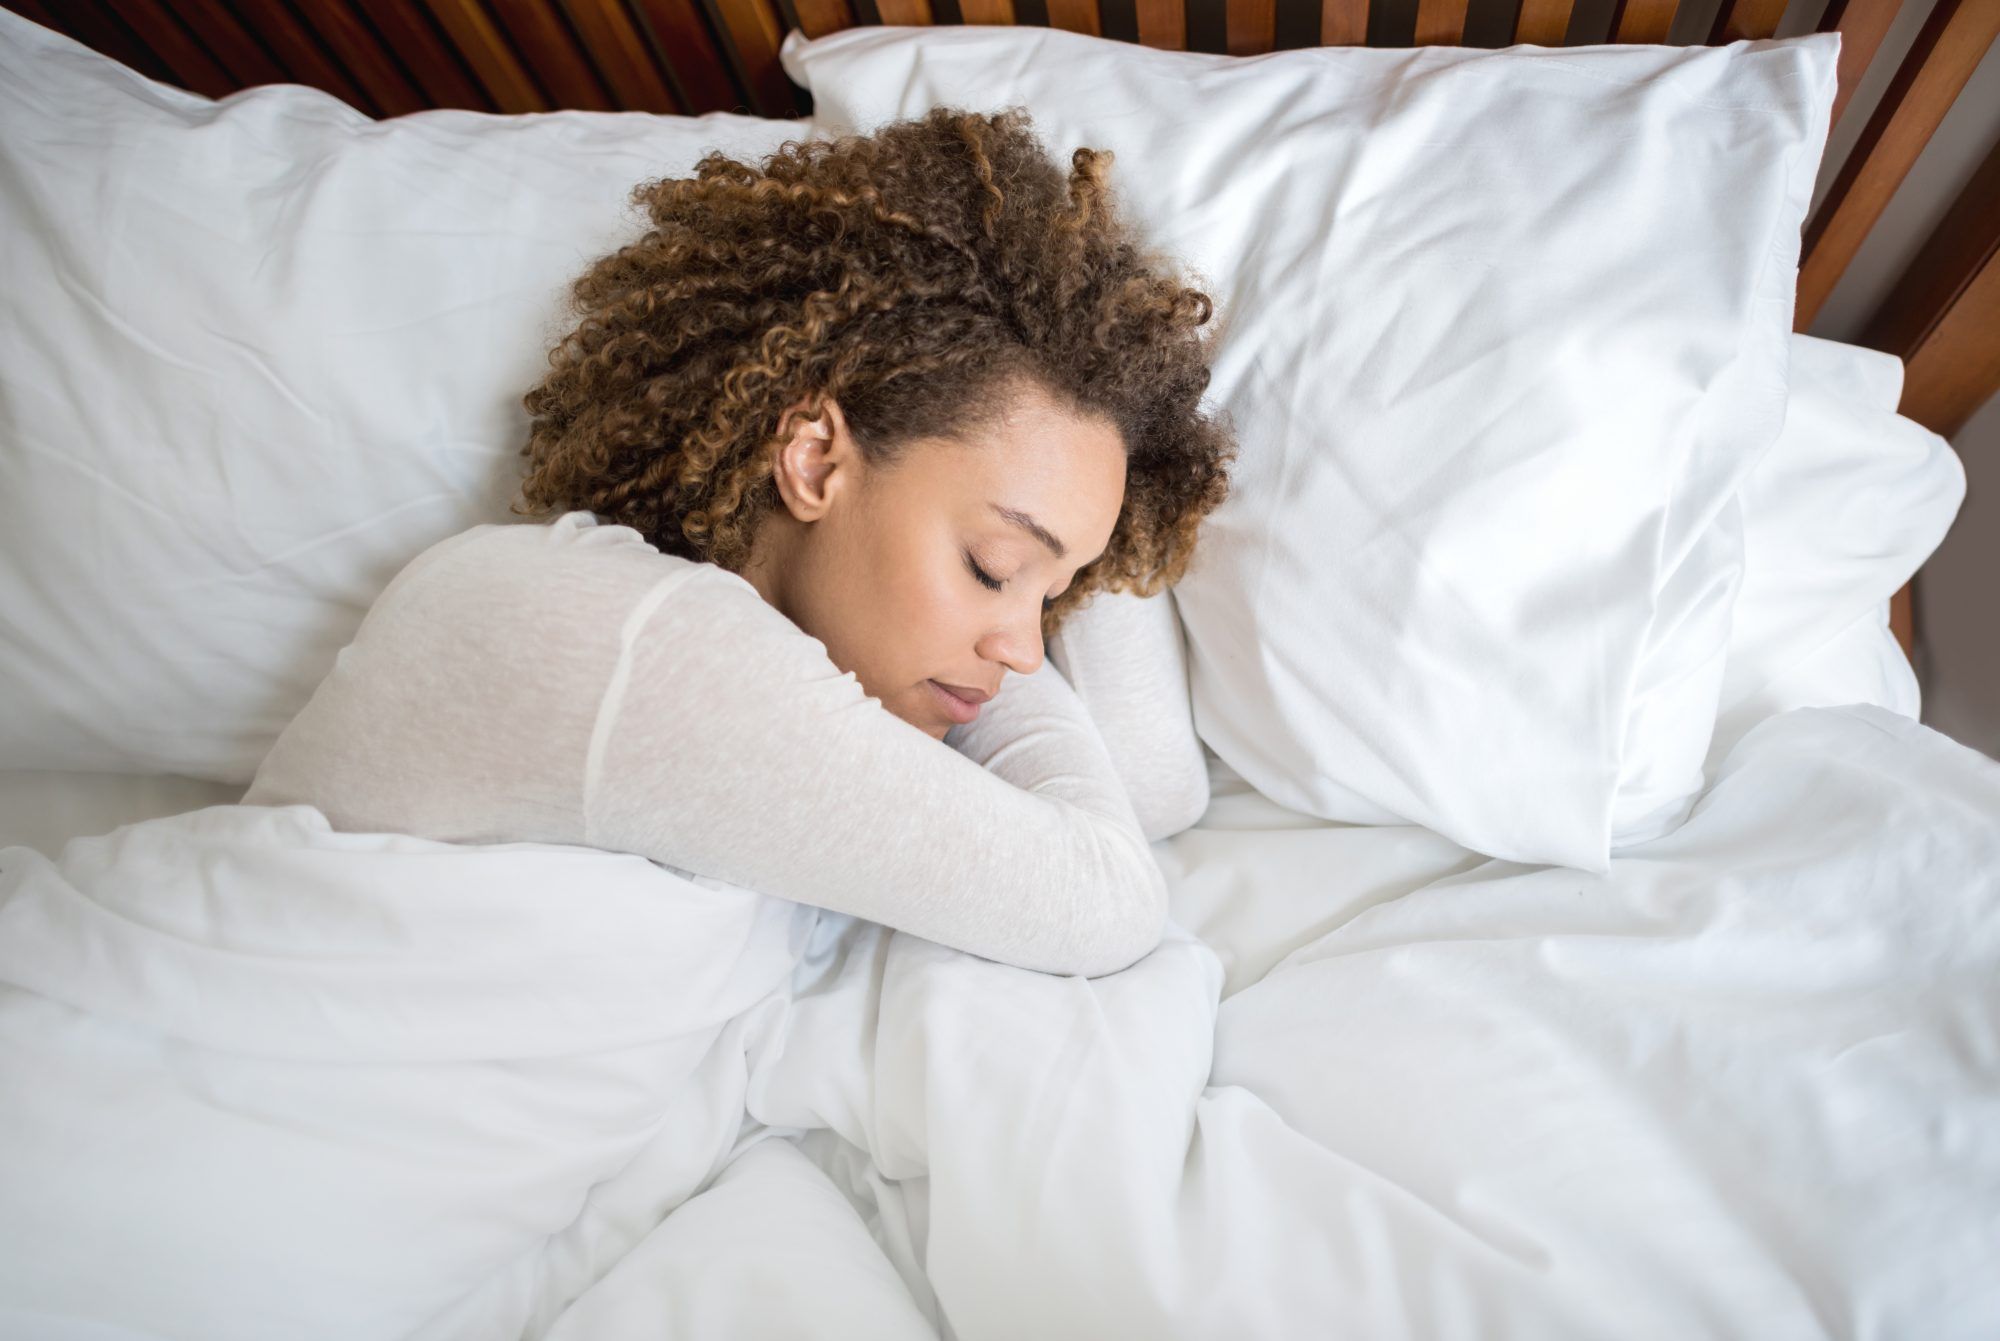 11 عادة صحية يمكن أن تساعدك في الواقع على النوم بشكل أفضل